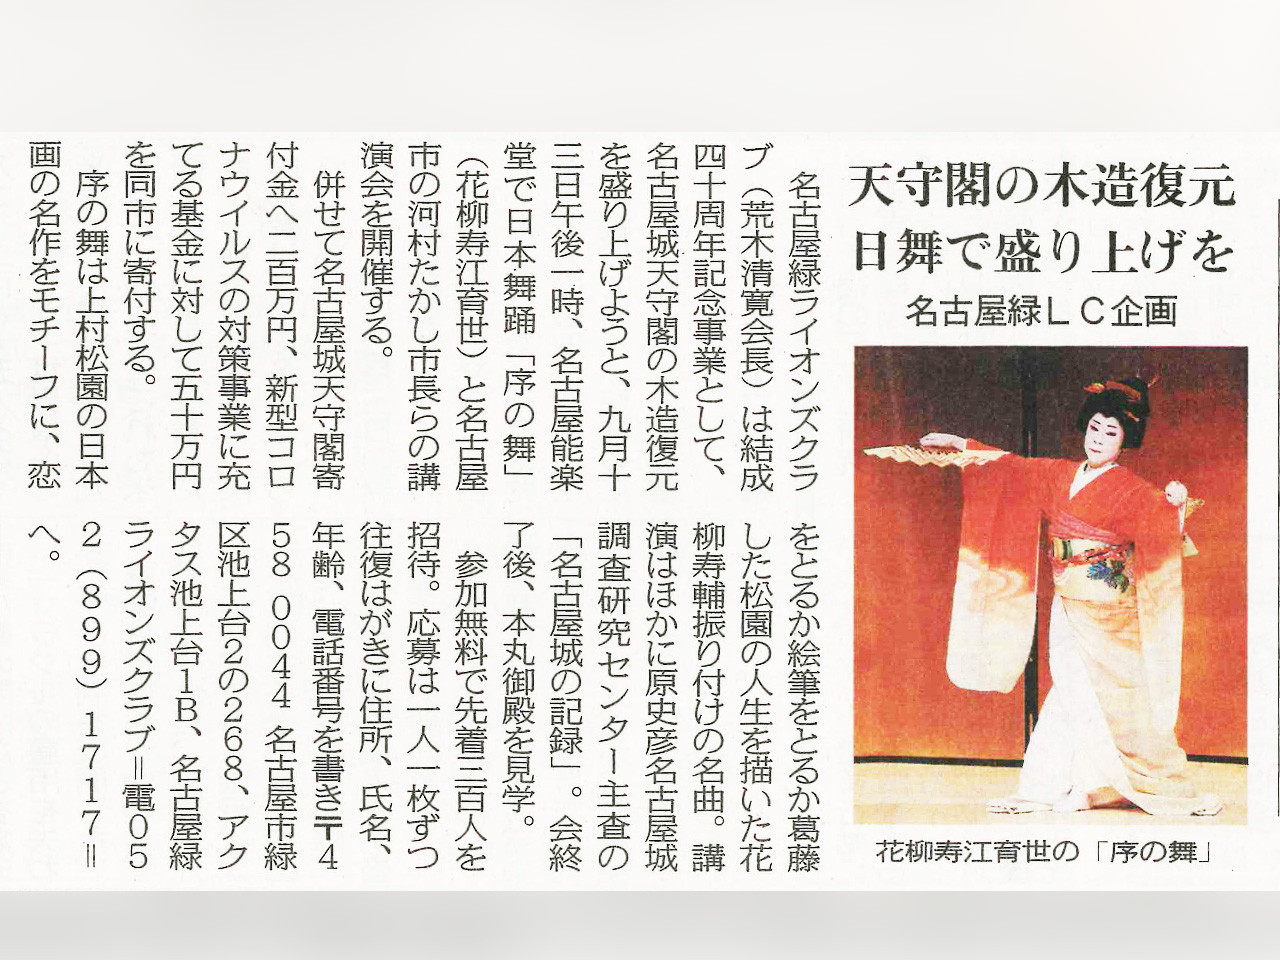 名古屋能楽堂で日本舞踊・講演会開催の記事